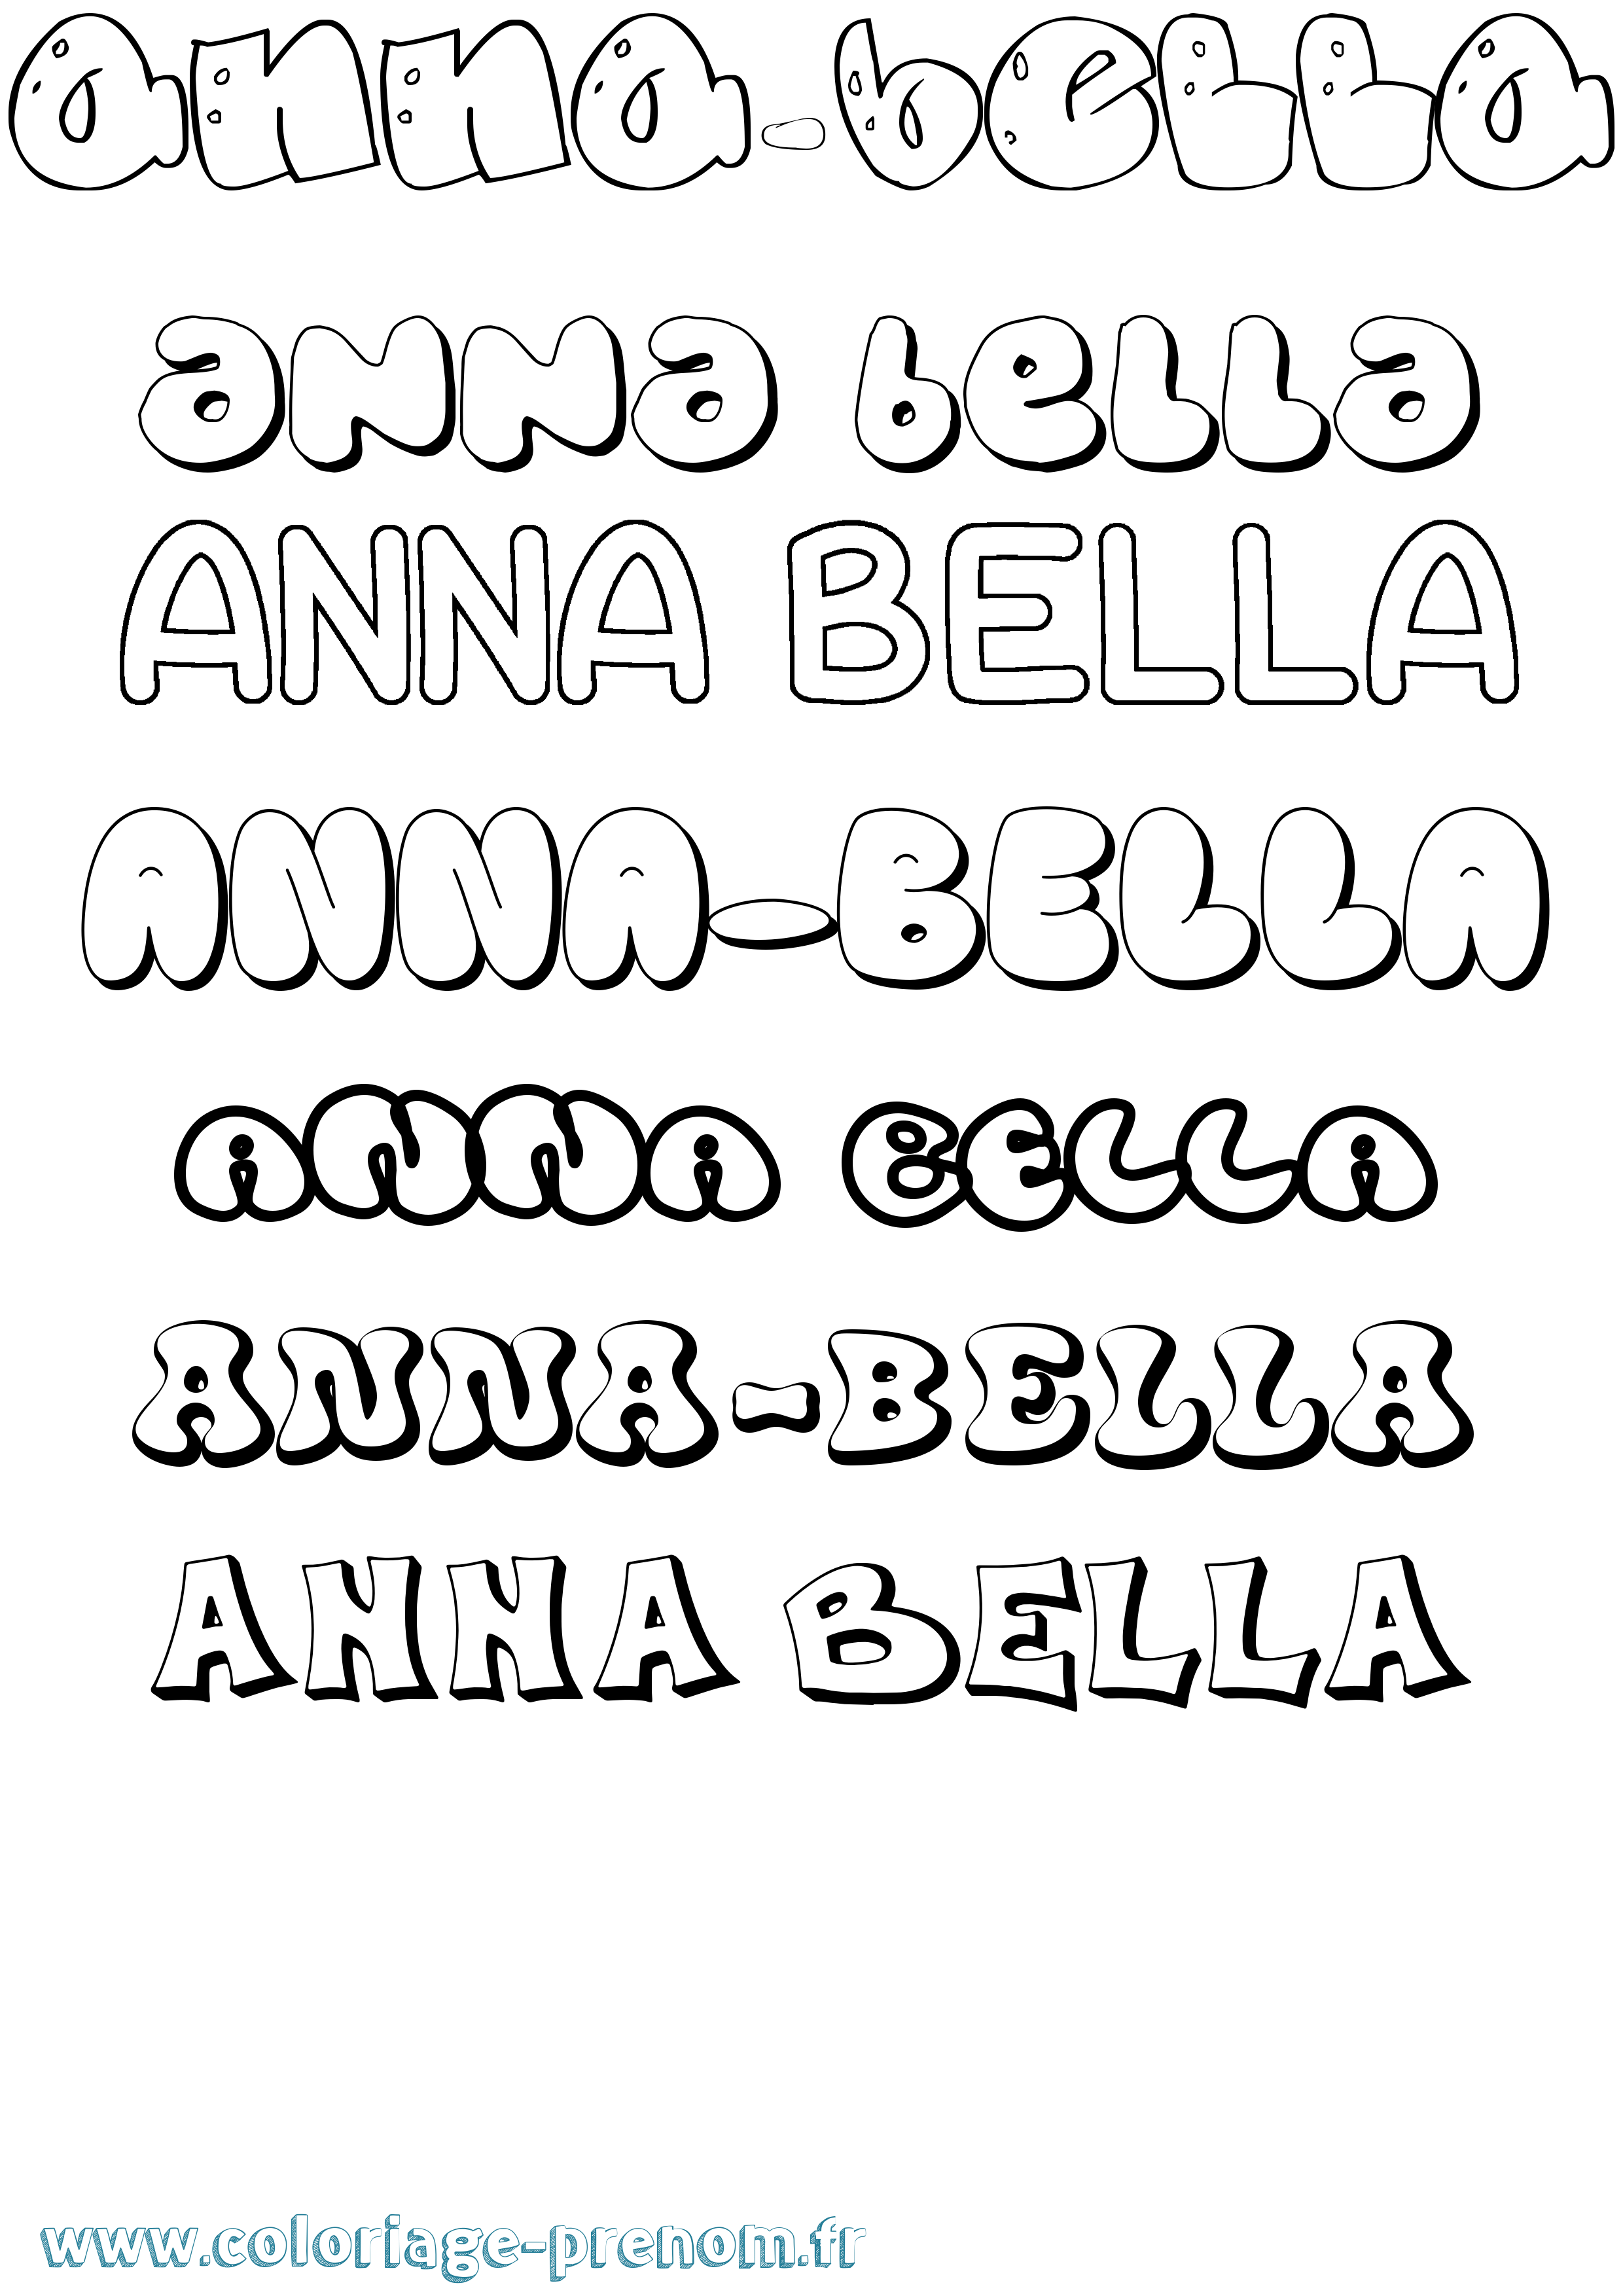 Coloriage prénom Anna-Bella Bubble